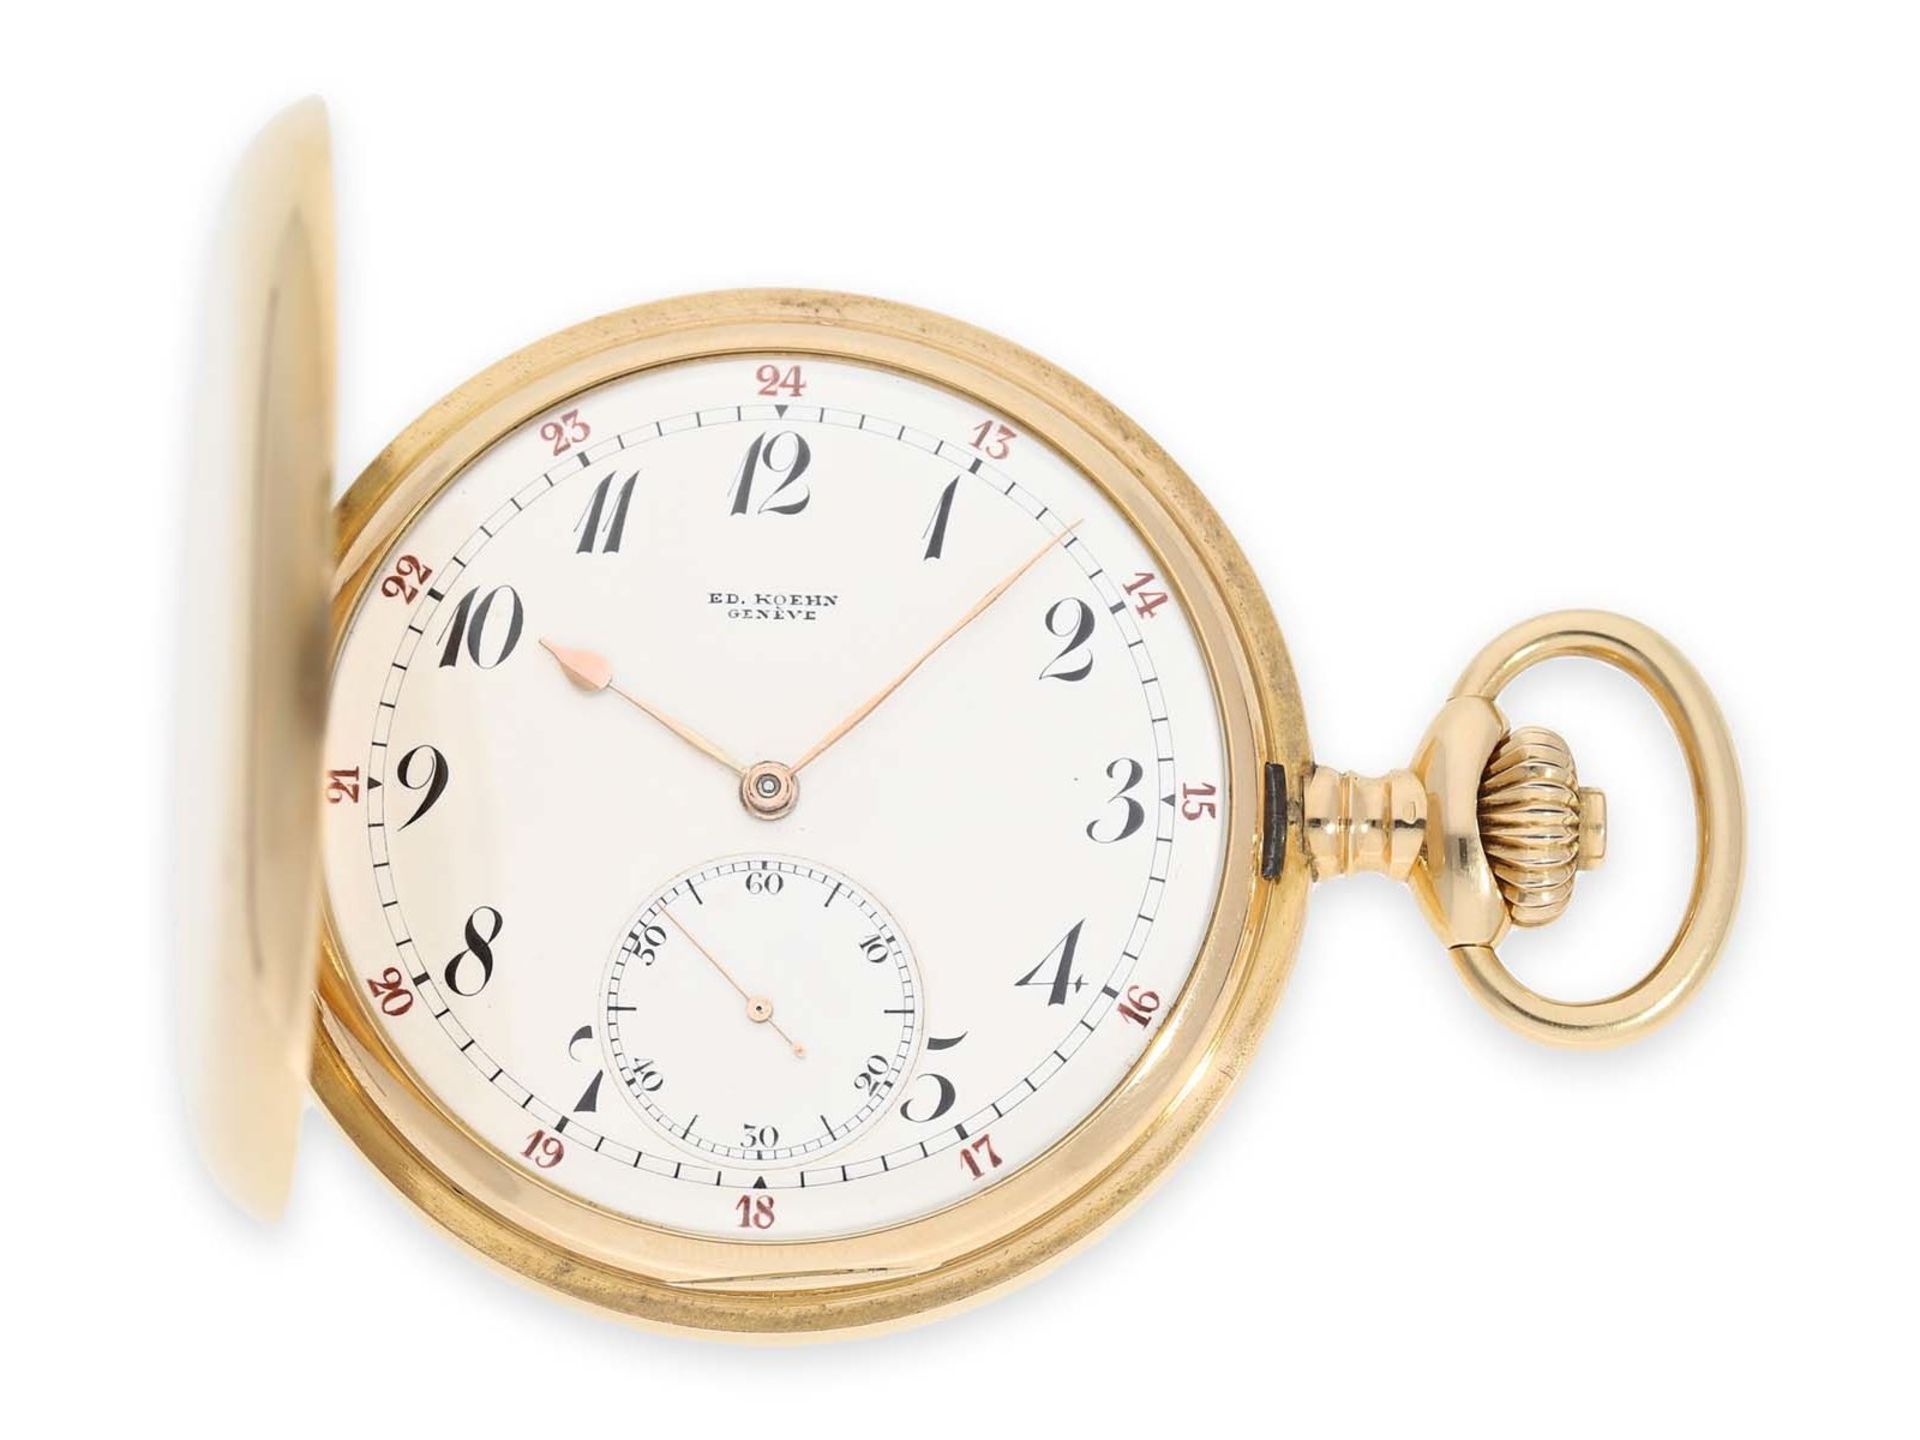 Taschenuhr: sehr schweres Genfer Ankerchronometer besonderer Qualität, "Chronometre Du Bois" Rio